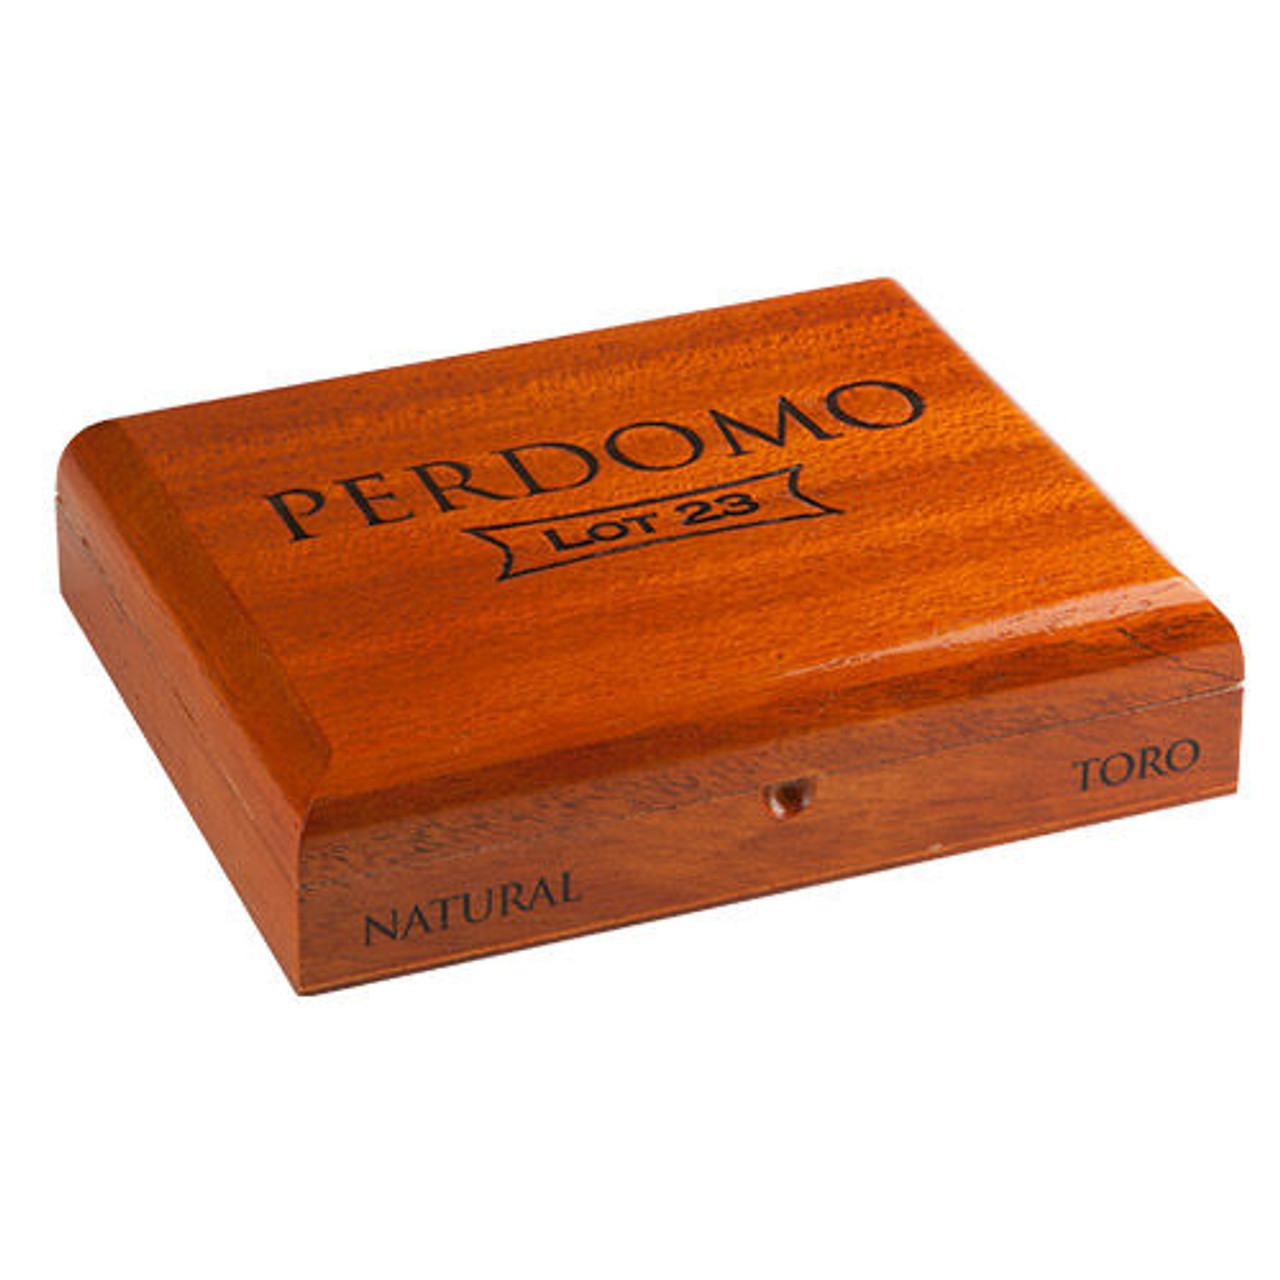 Perdomo Lot 23 Churchill EMS Cigars - 7 x 50 (Box of 24) Box